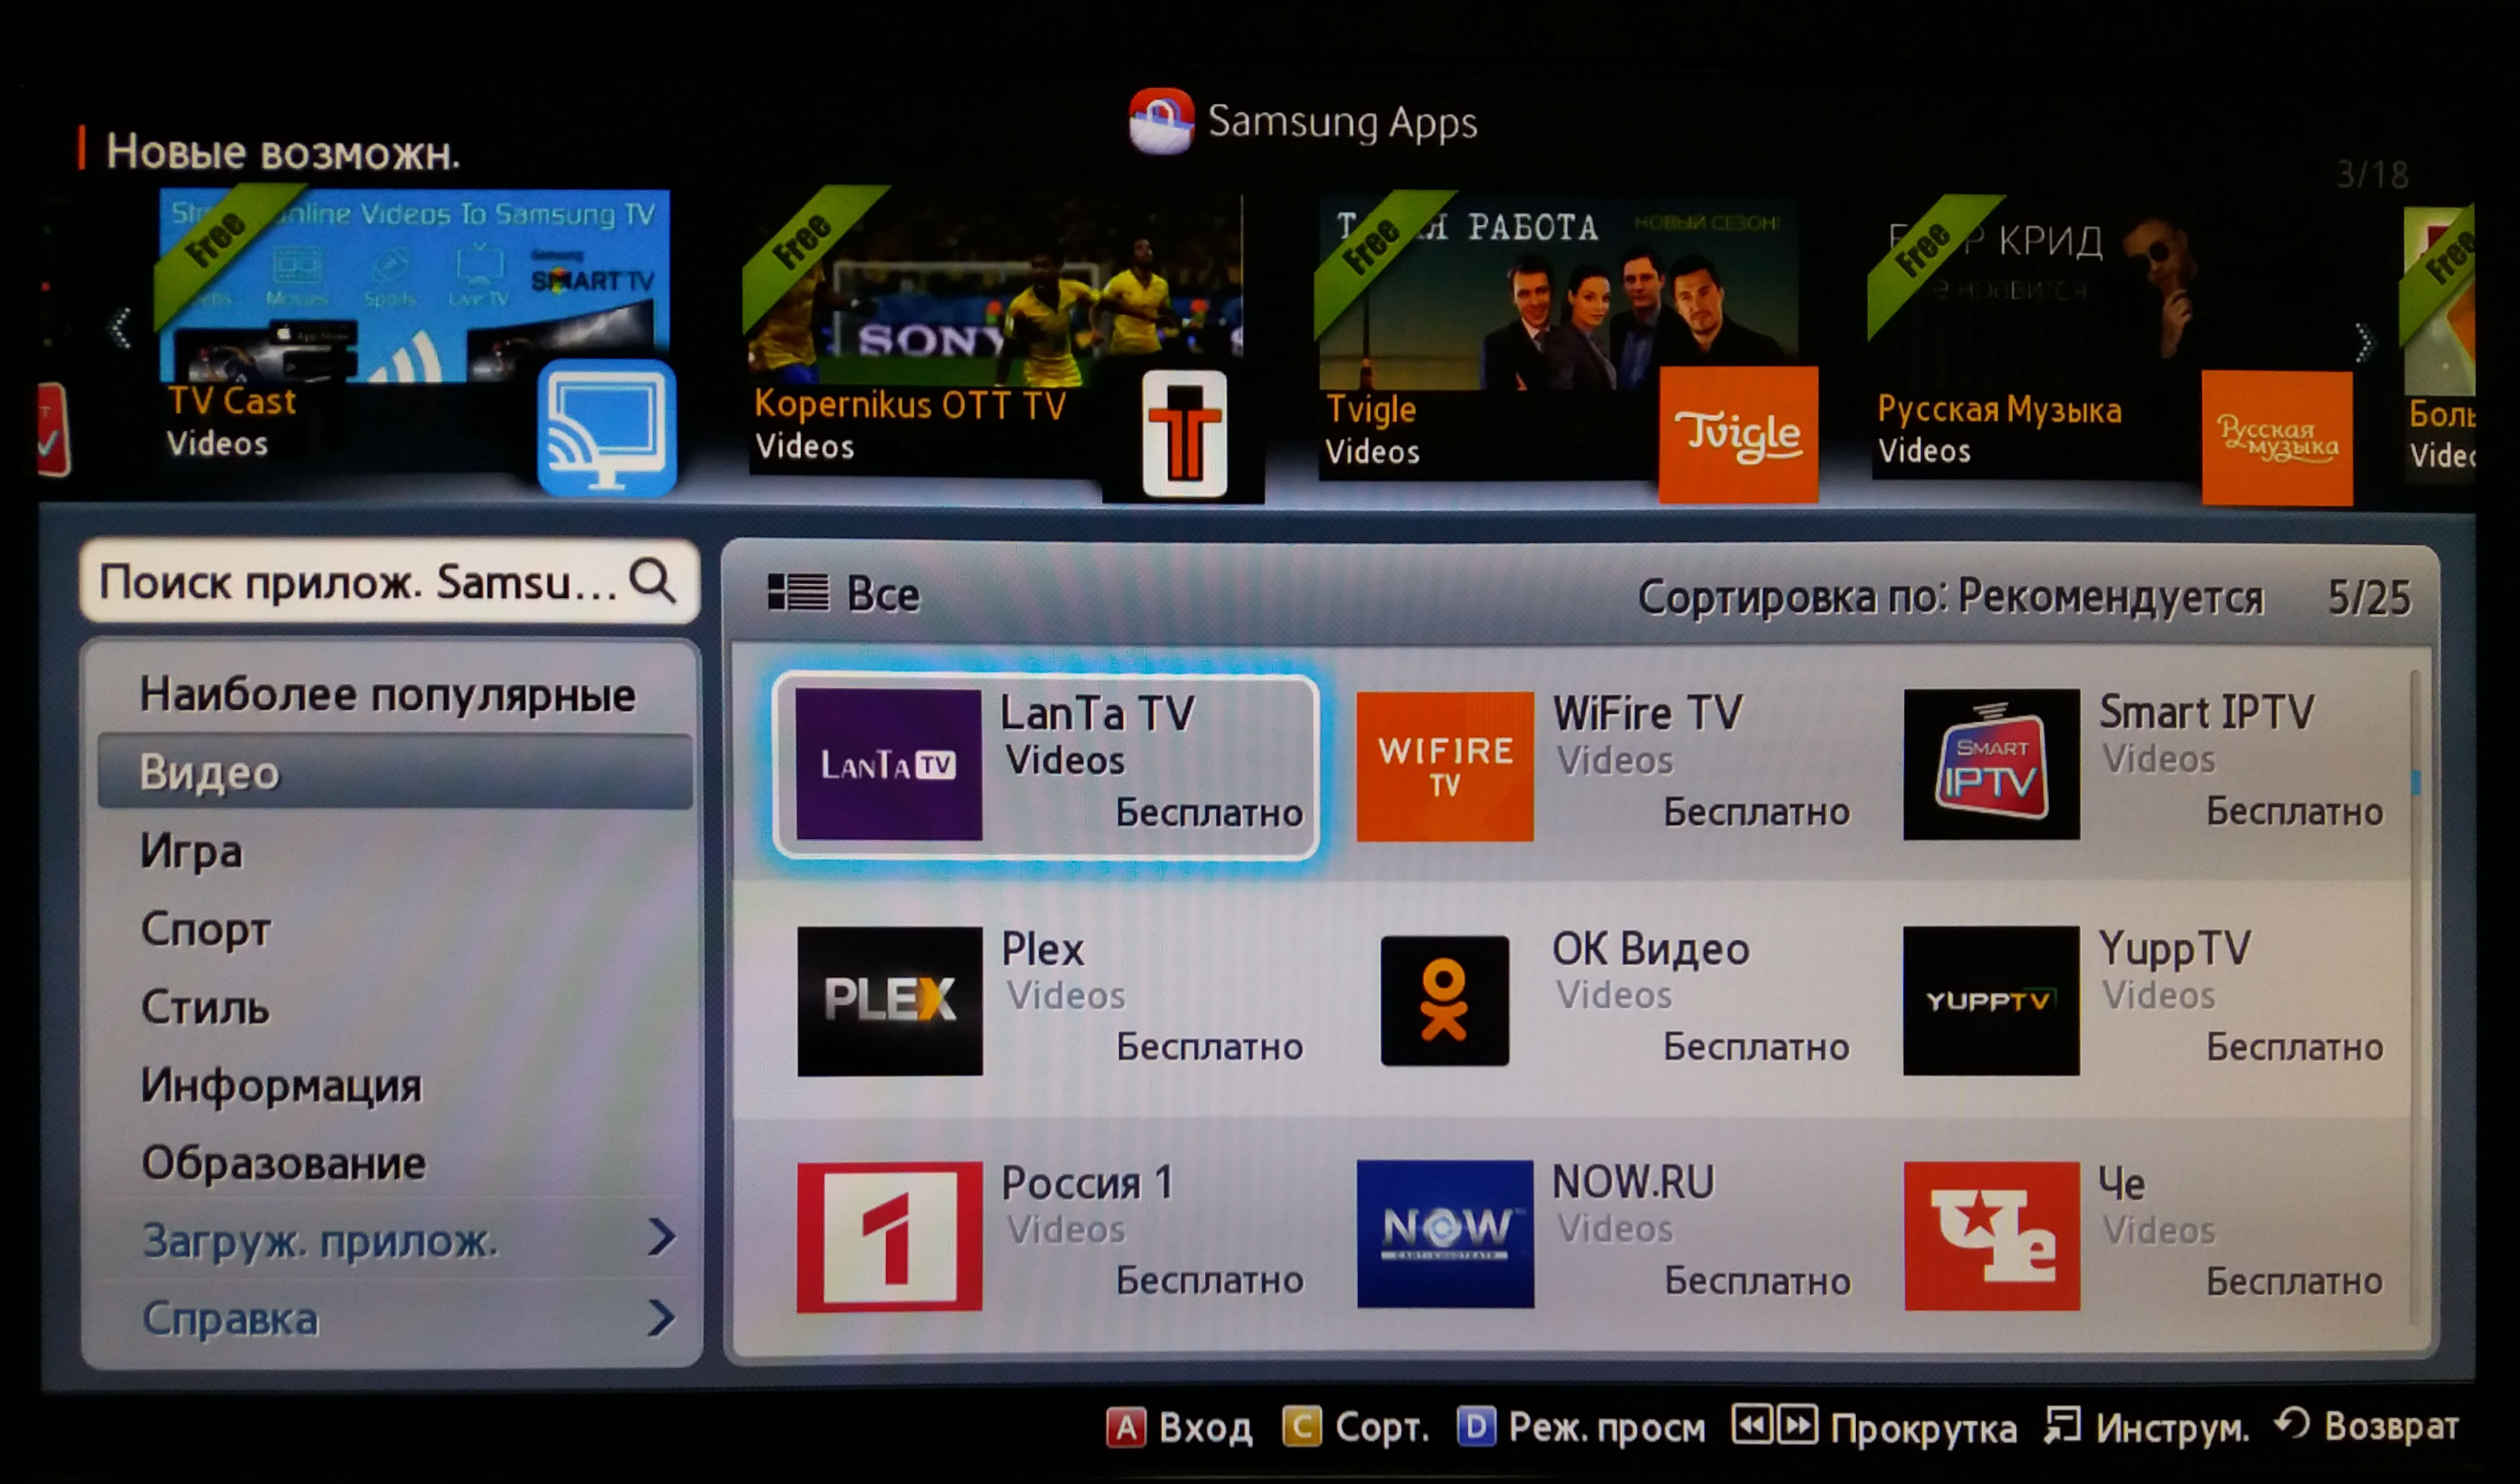 Новое приложение телевизор. Samsung Smart TV приложения. Samsung apps для Smart TV. IPTV на смарт телевизоре. Samsung apps на телевизоре.